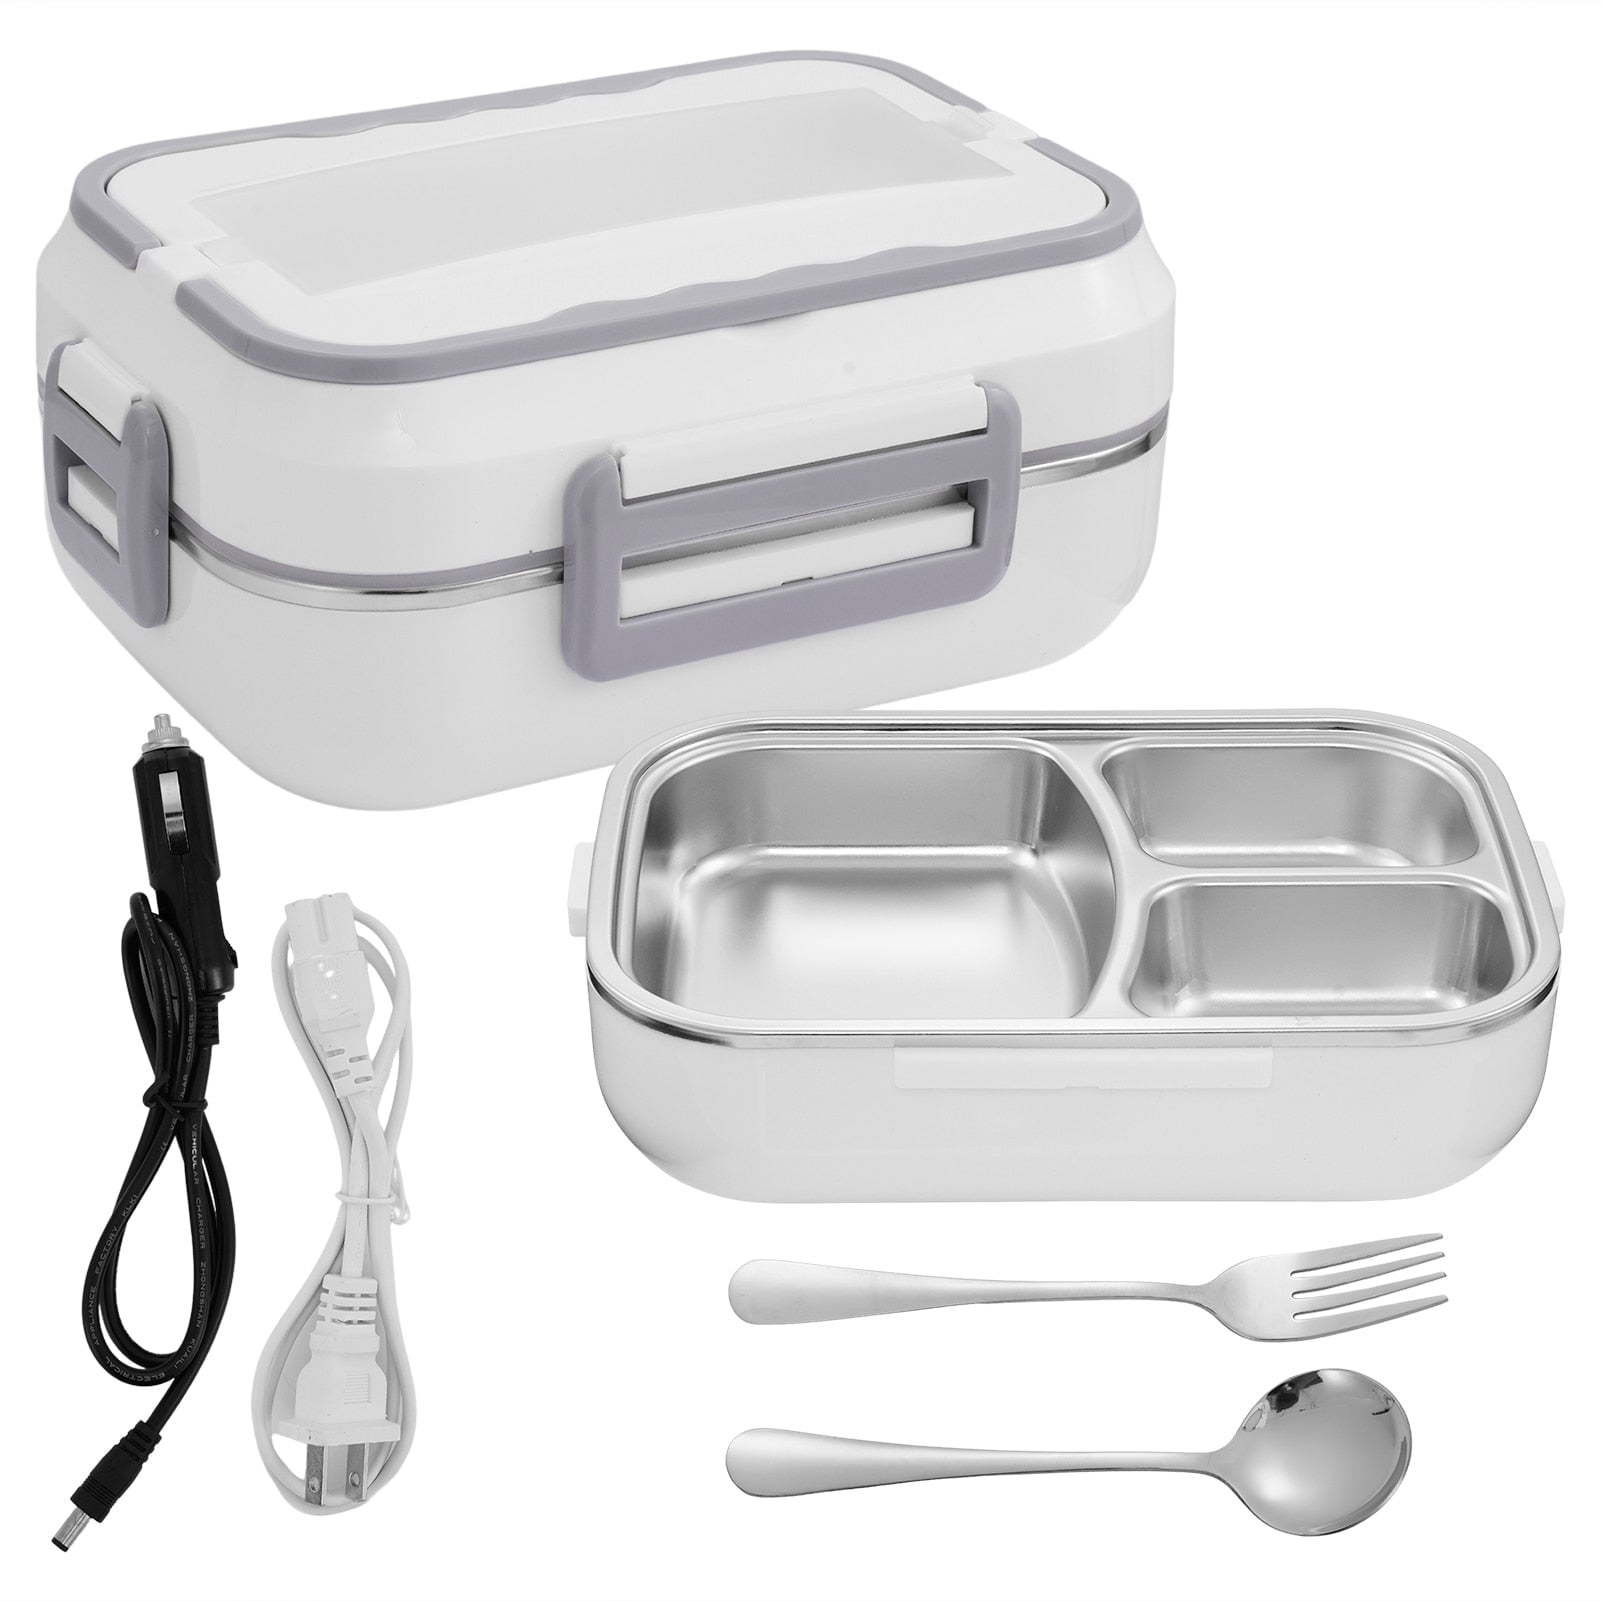 Tragbare Elektrische Lebensmittel Lunch box Essen aufwärmen Geschirr Sets für die Arbeit/Auto/Reisen zu verwenden 12V/110V /220V Lunch box Raffiniertedinge 